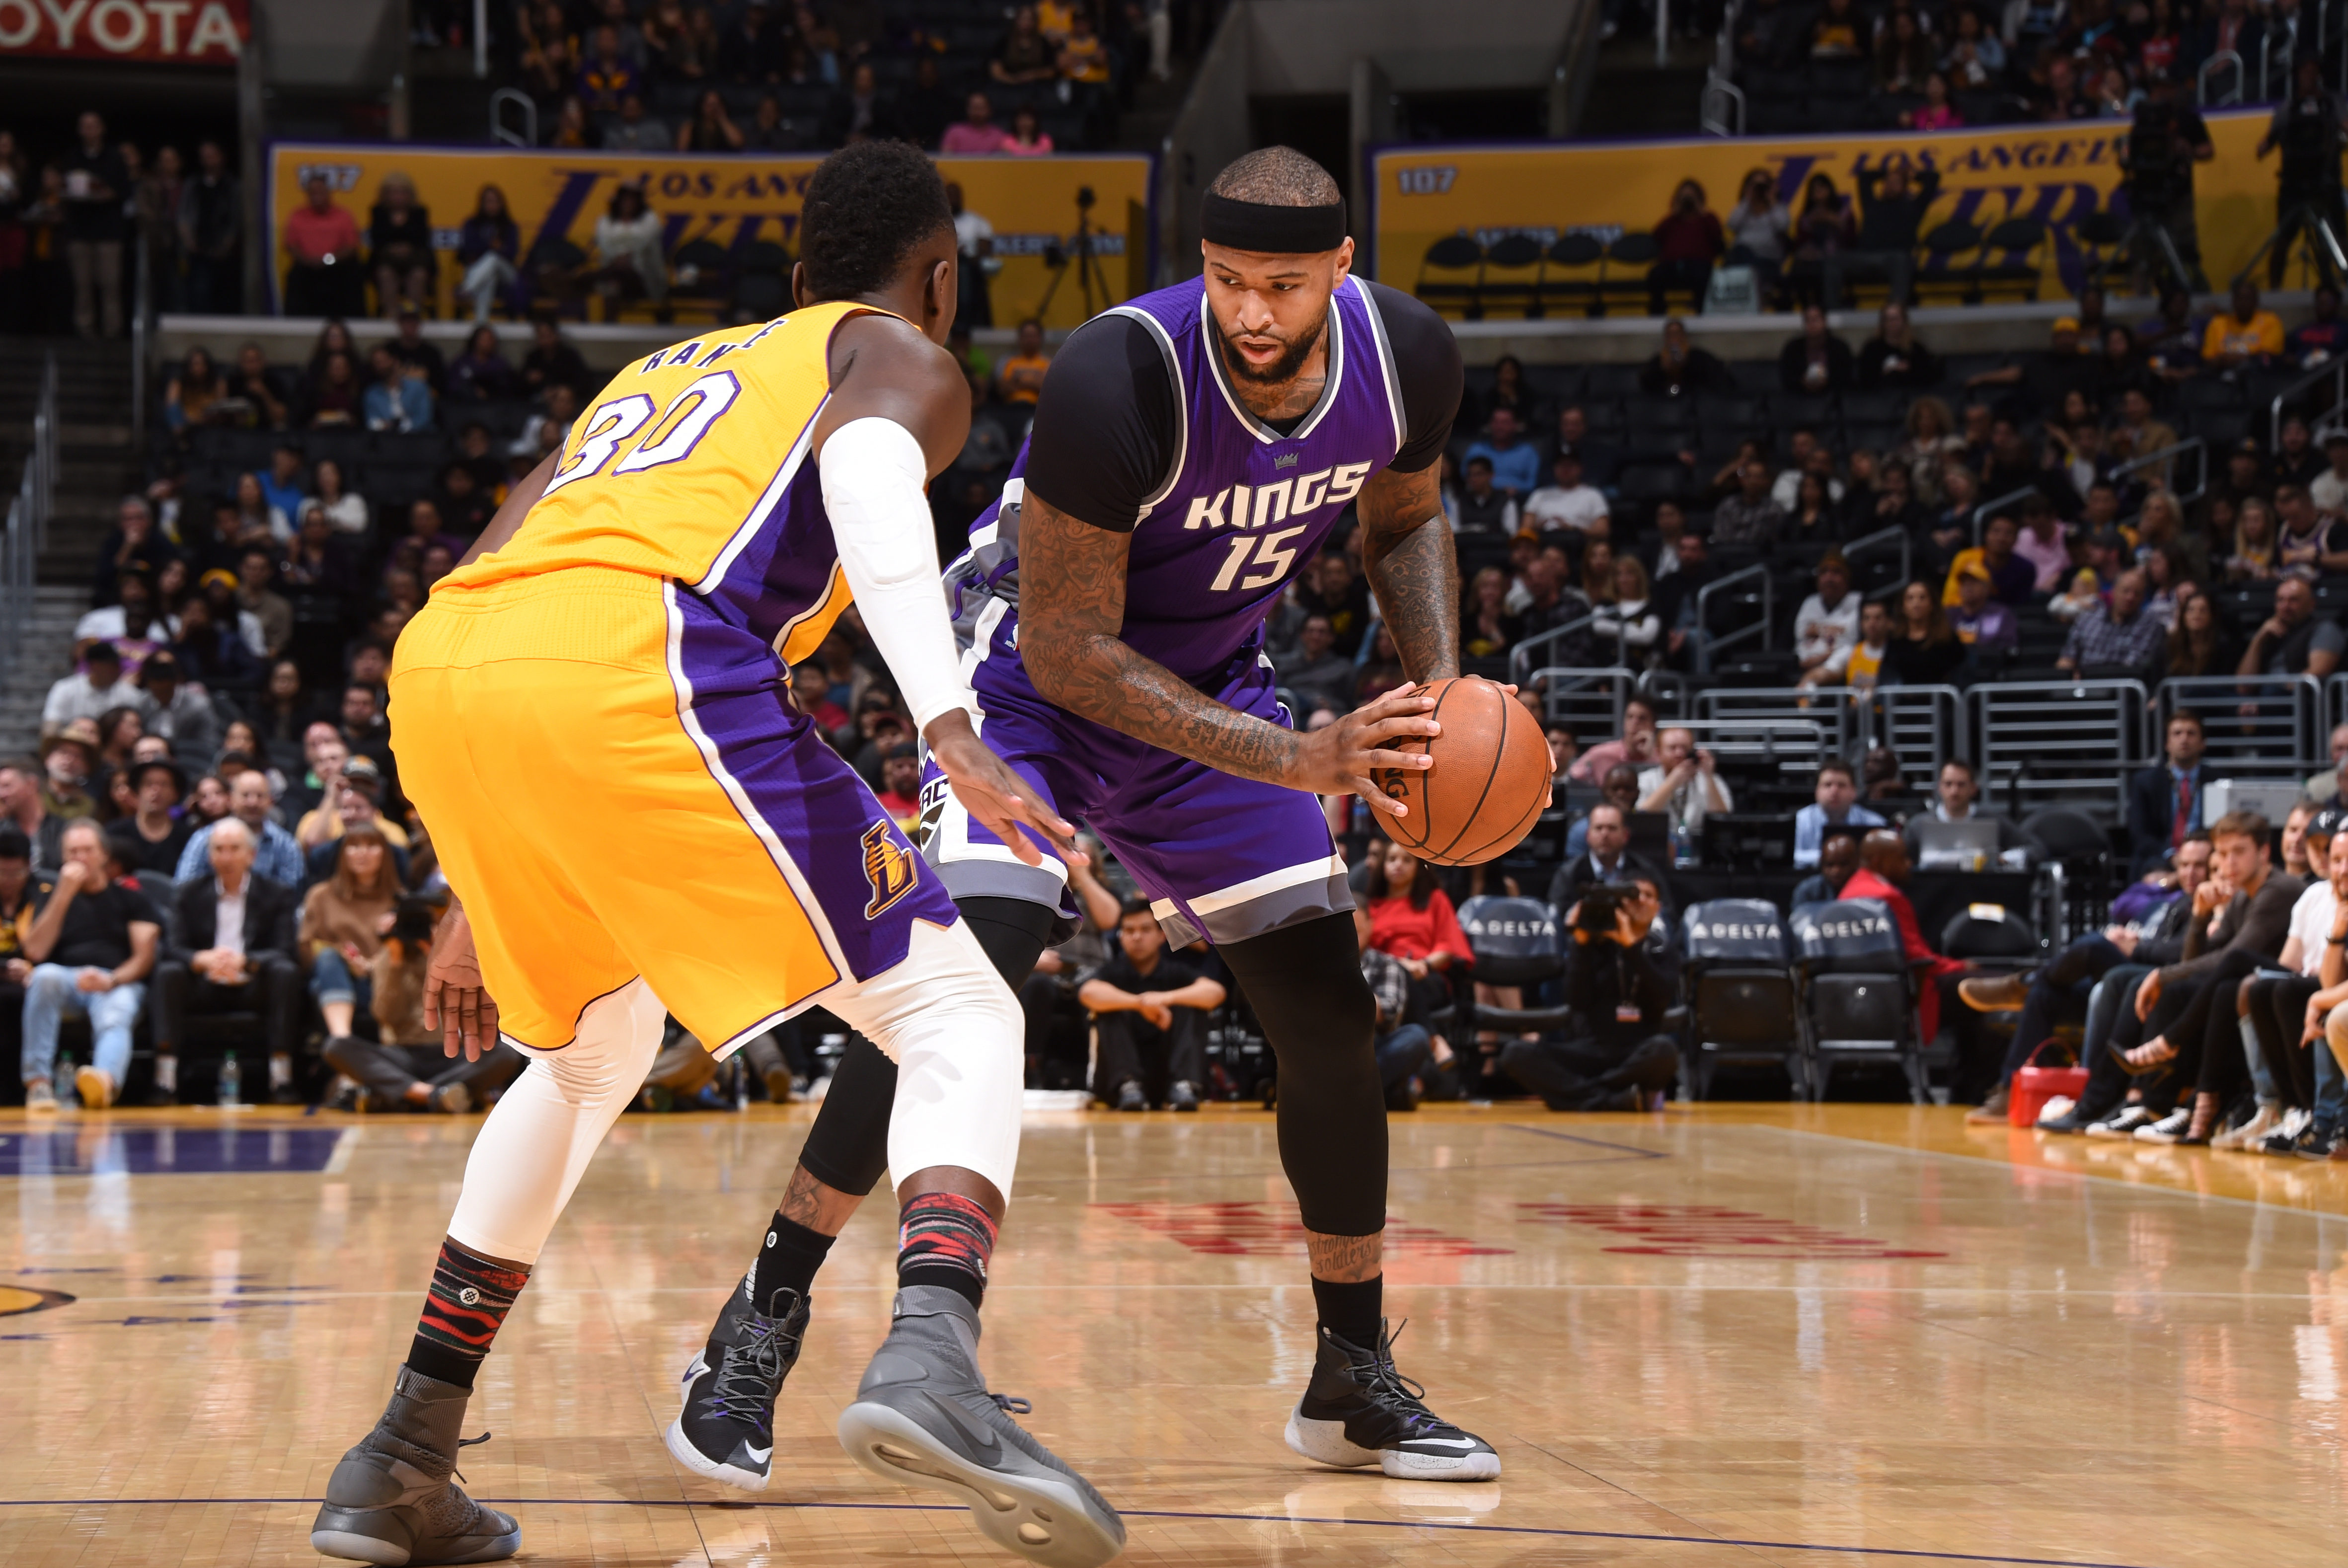 Kings vs. Lakers: Score, Highlights, Reaction from 2017 Regular Season | Bleacher Report